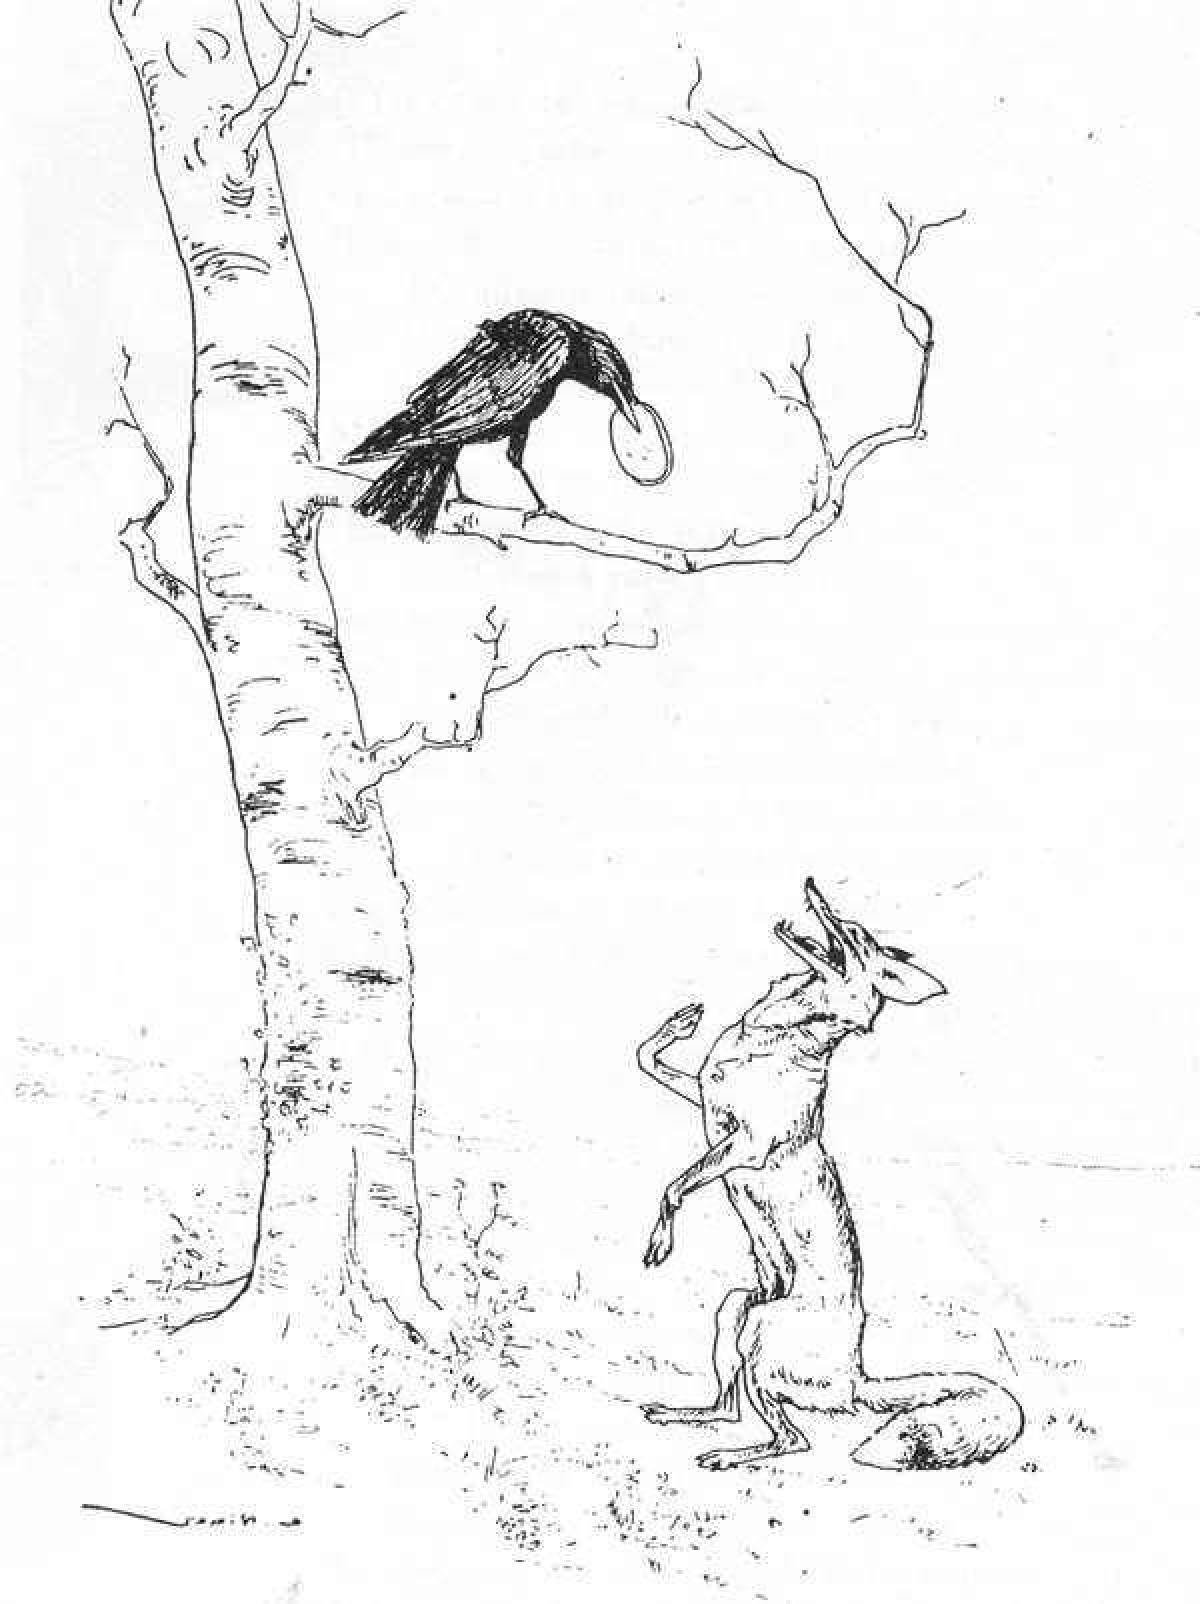 Раскраска крылова. Раскраска басни Крылова ворона и лисица. Иллюстрация к басне Крылова ворона и лисица. Иллюстрация к басне Эзопа ворон и лисица. Раскраска из басни Крылова ворона и лисица.